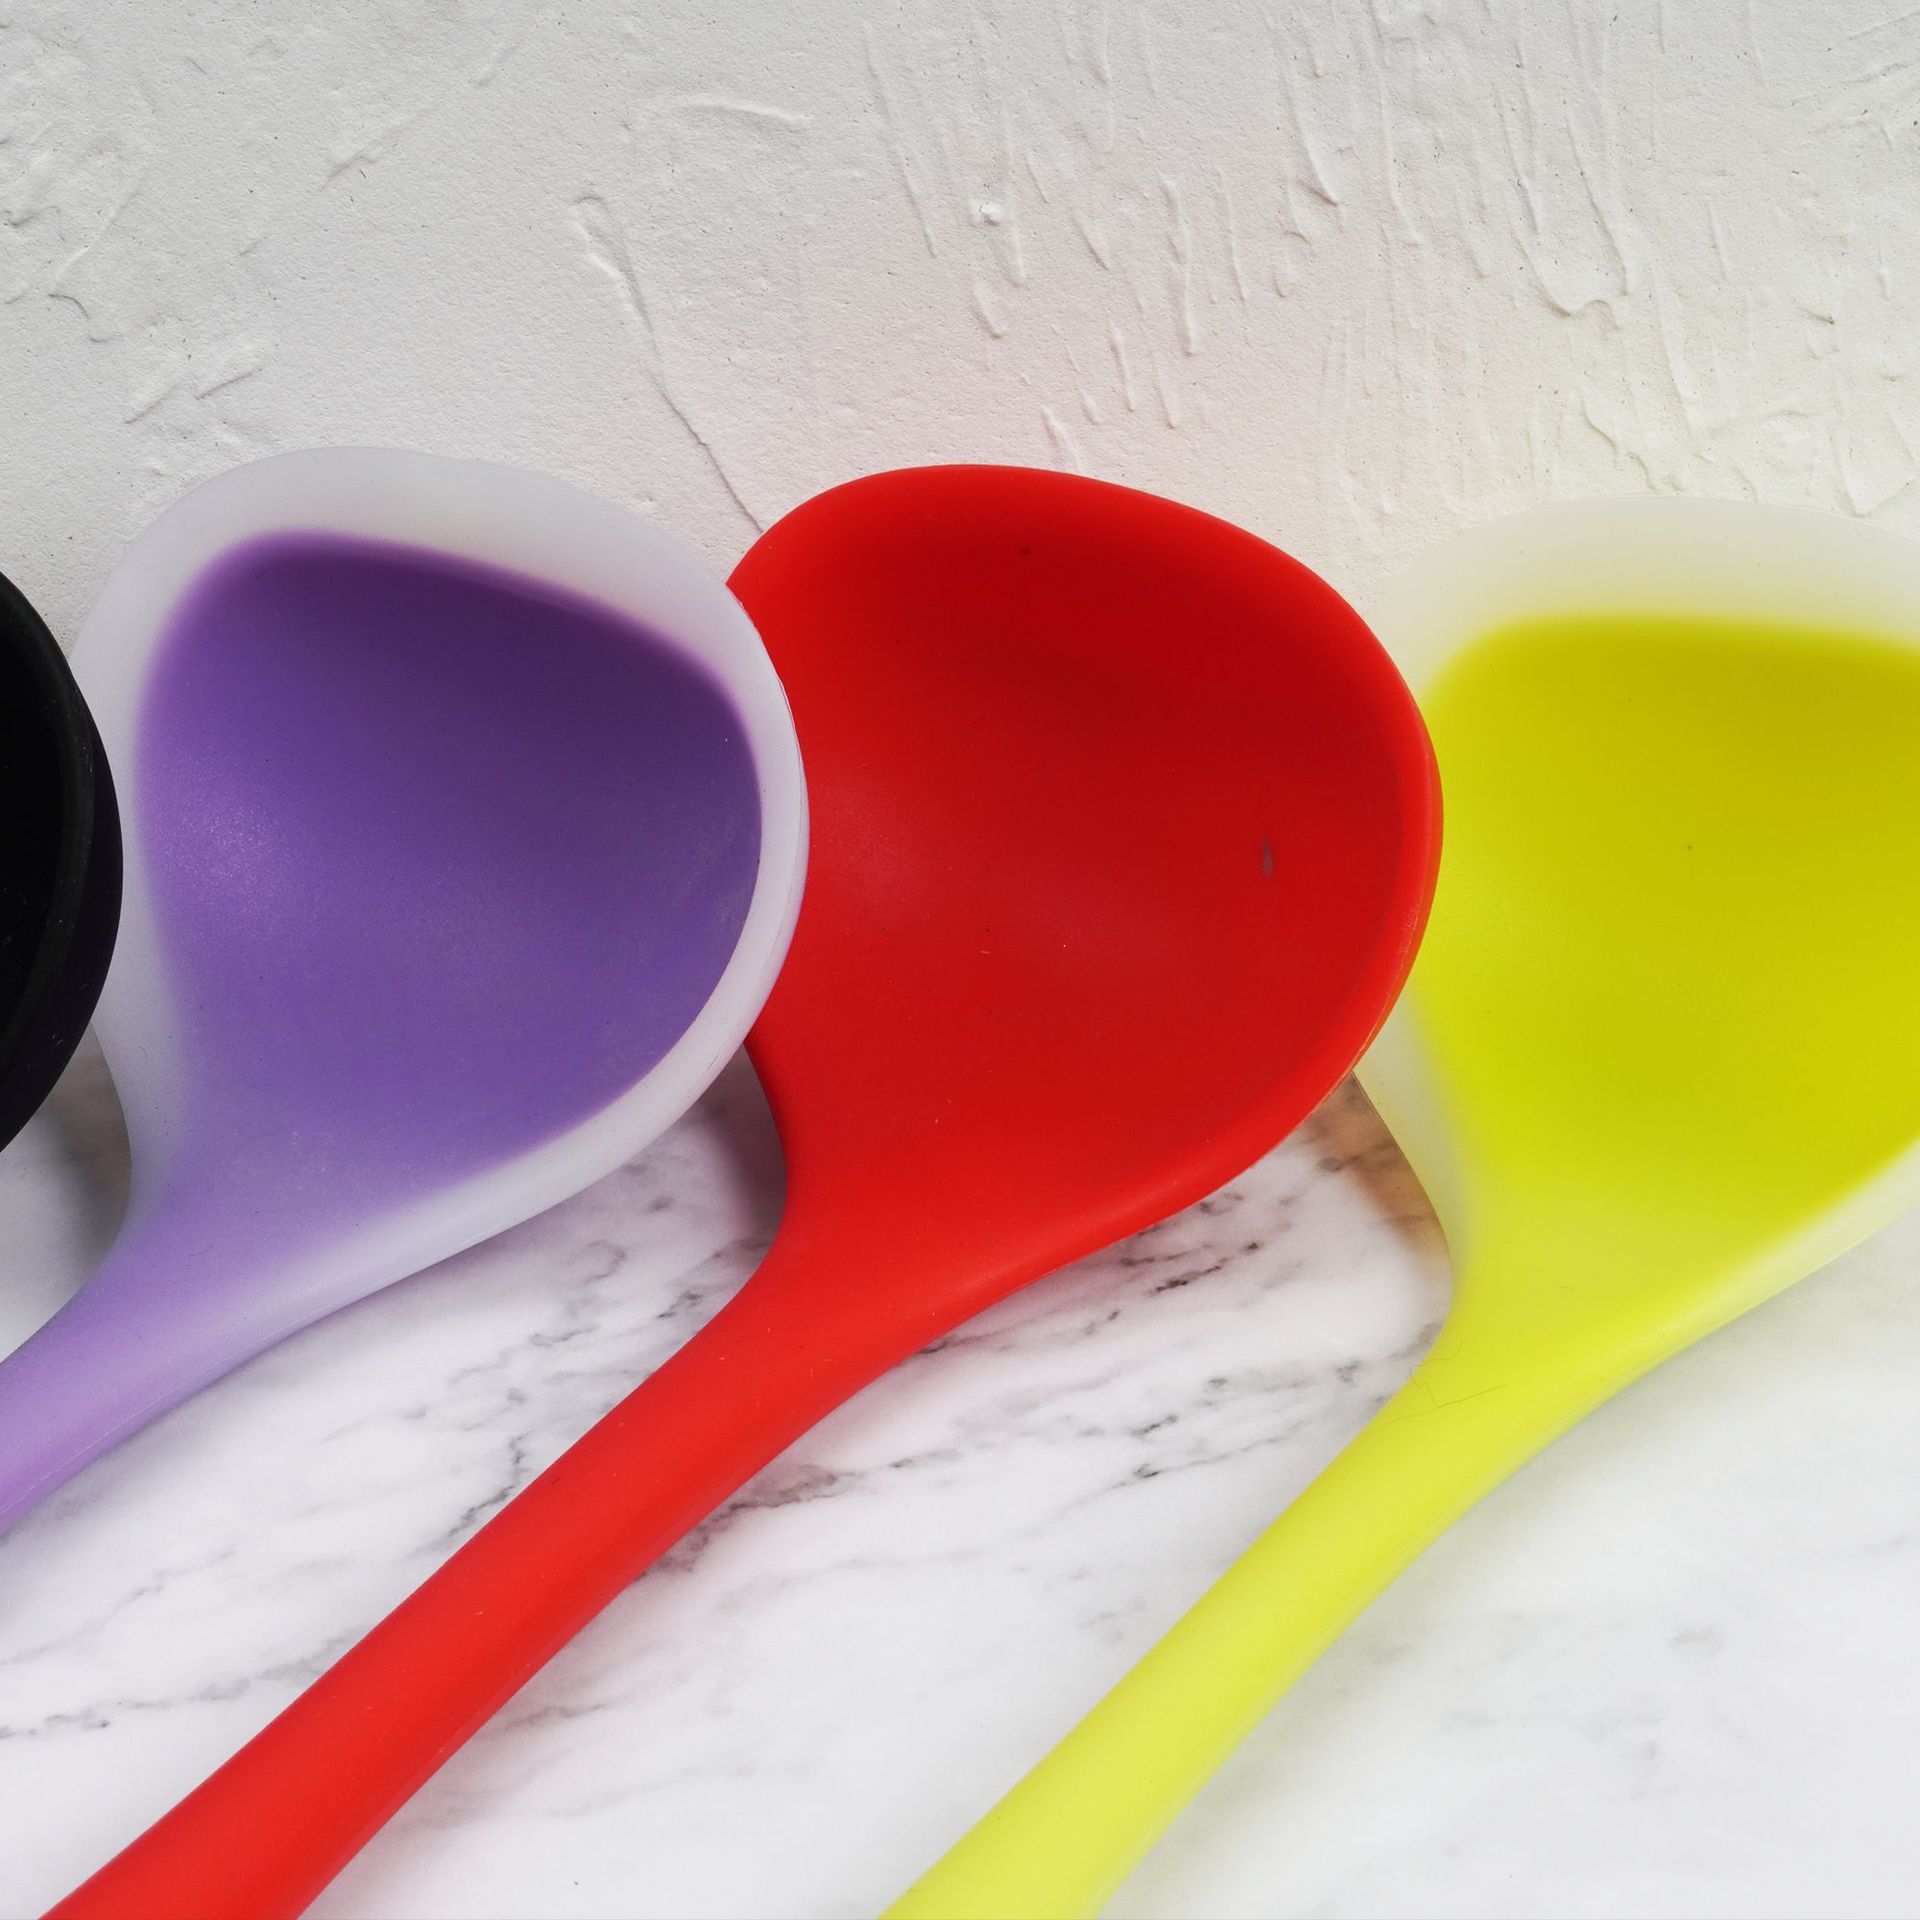 新款不锈钢陶瓷柄勺子 创意勺子 陶瓷勺子批发 咖啡冰长勺子厂家-阿里巴巴